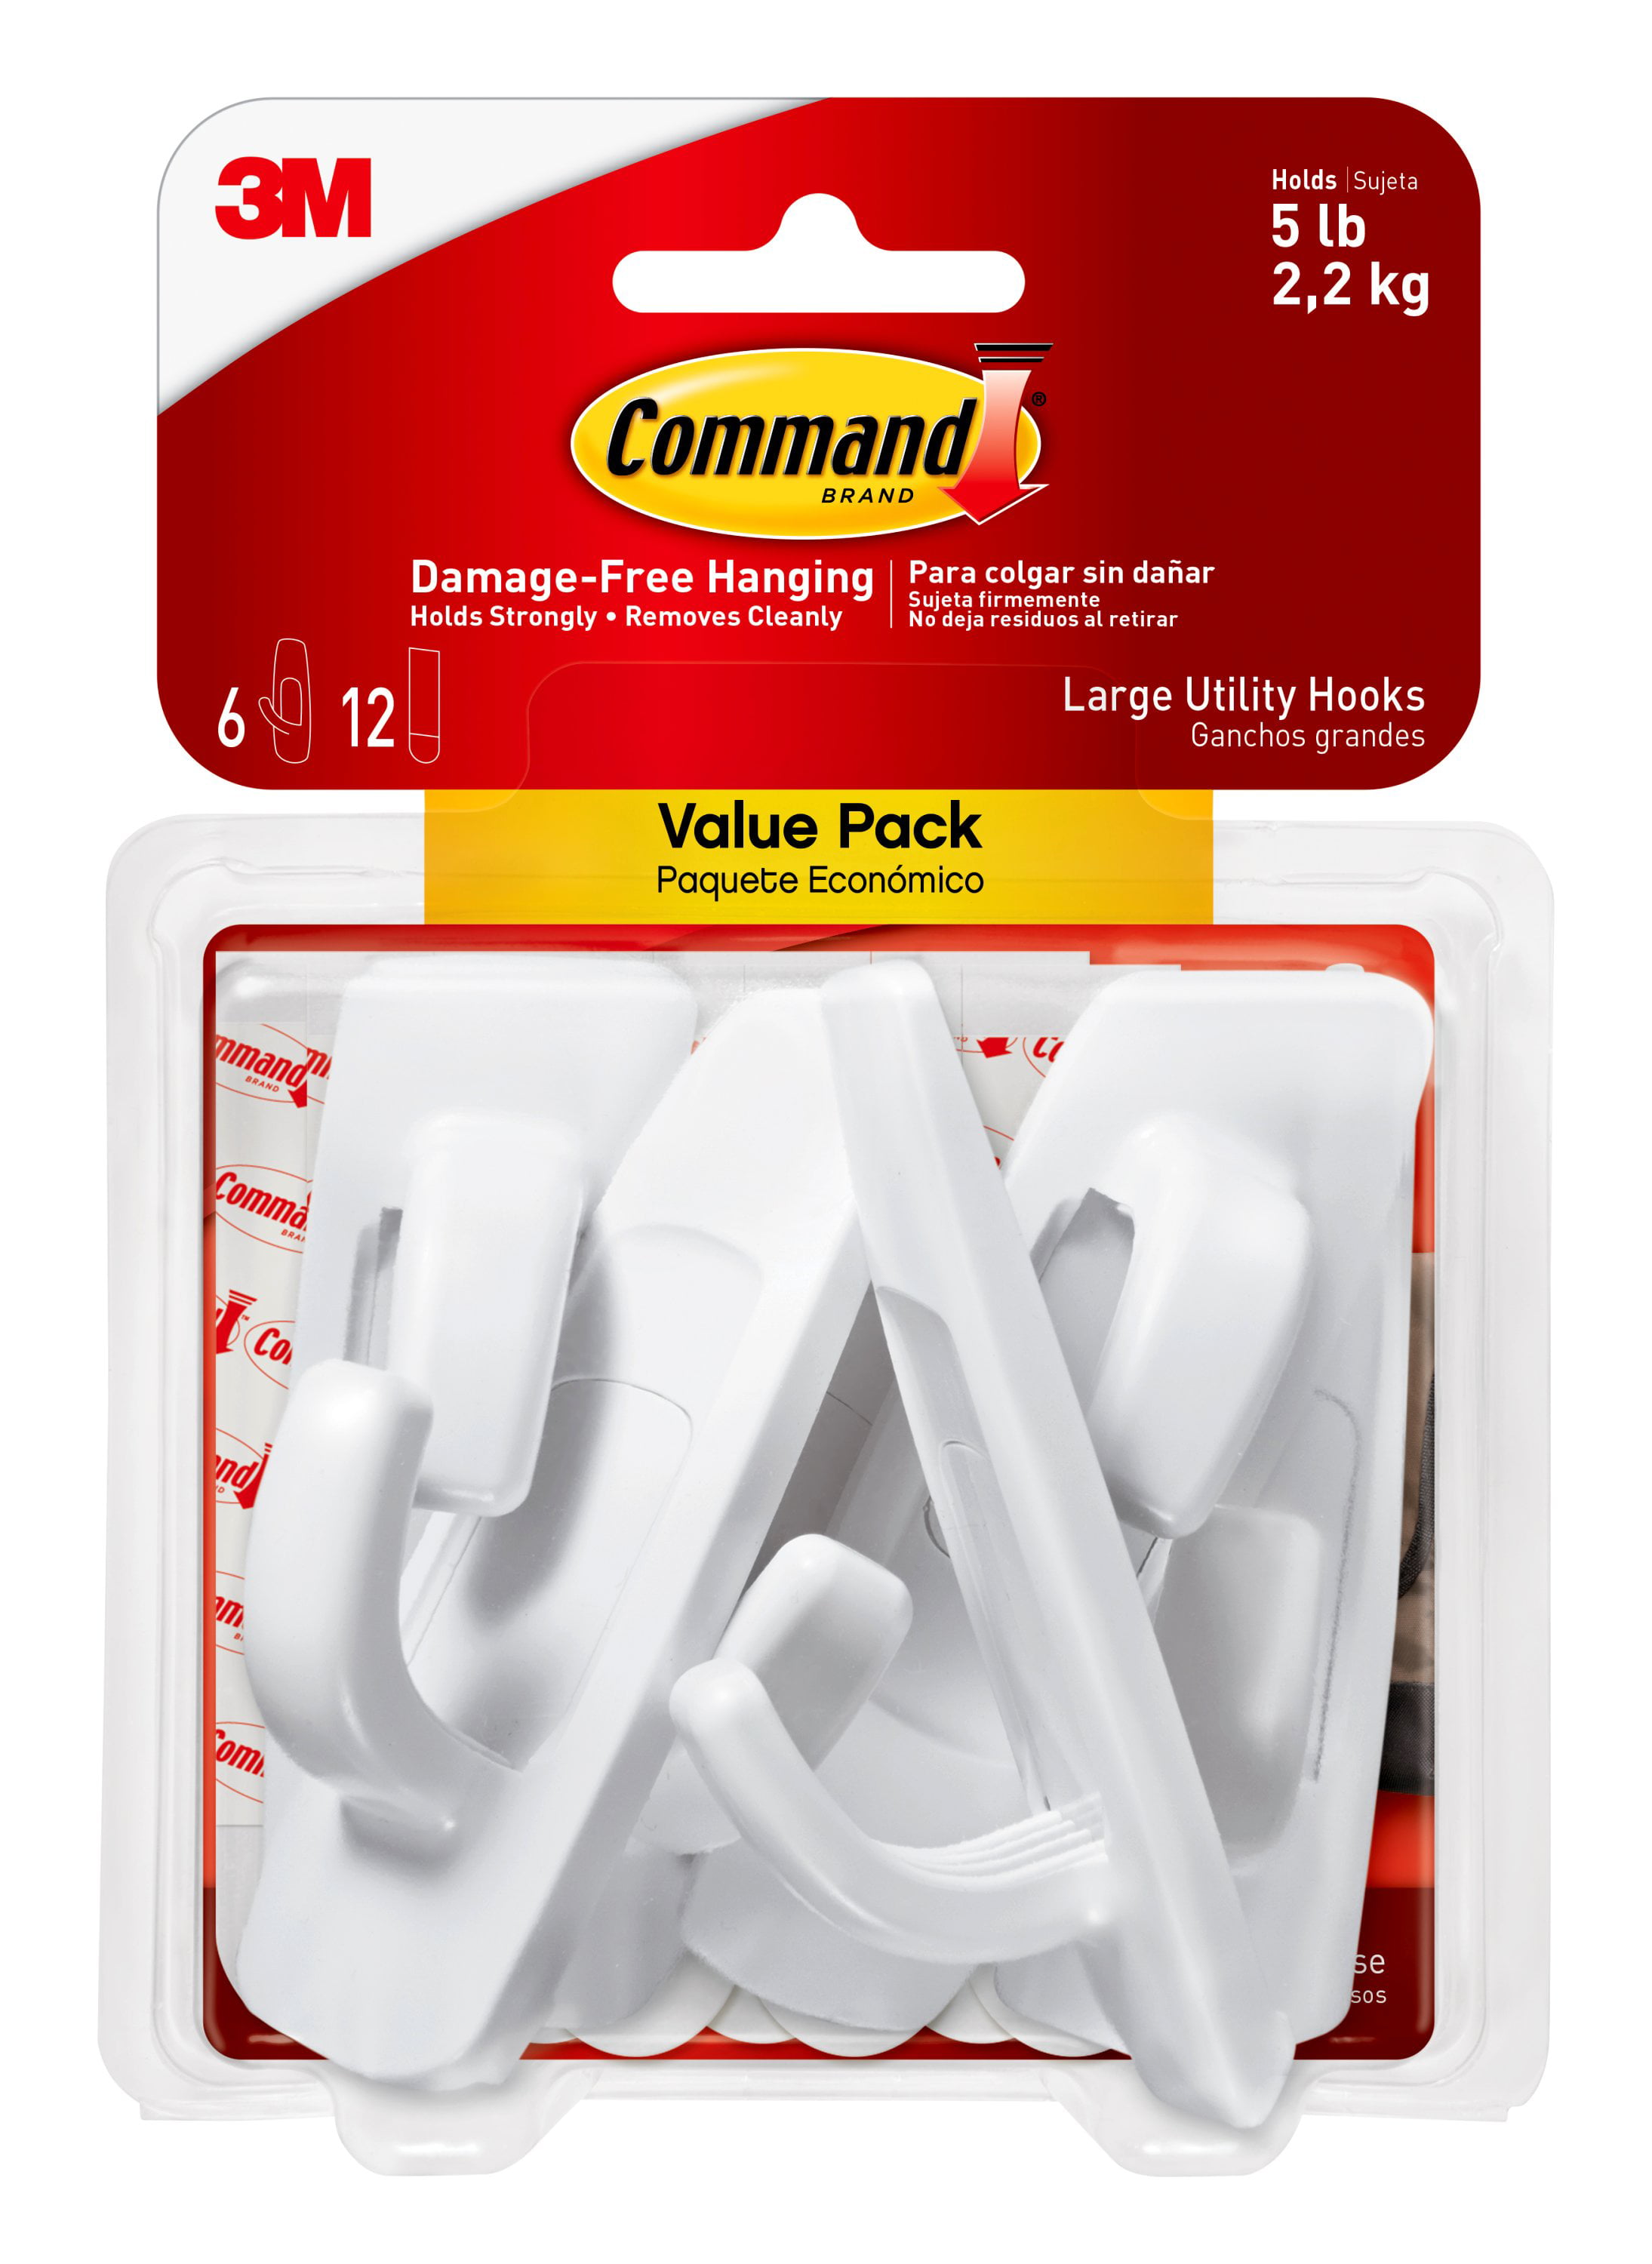 White Command 3M Damage-Free Large Utility Hooks